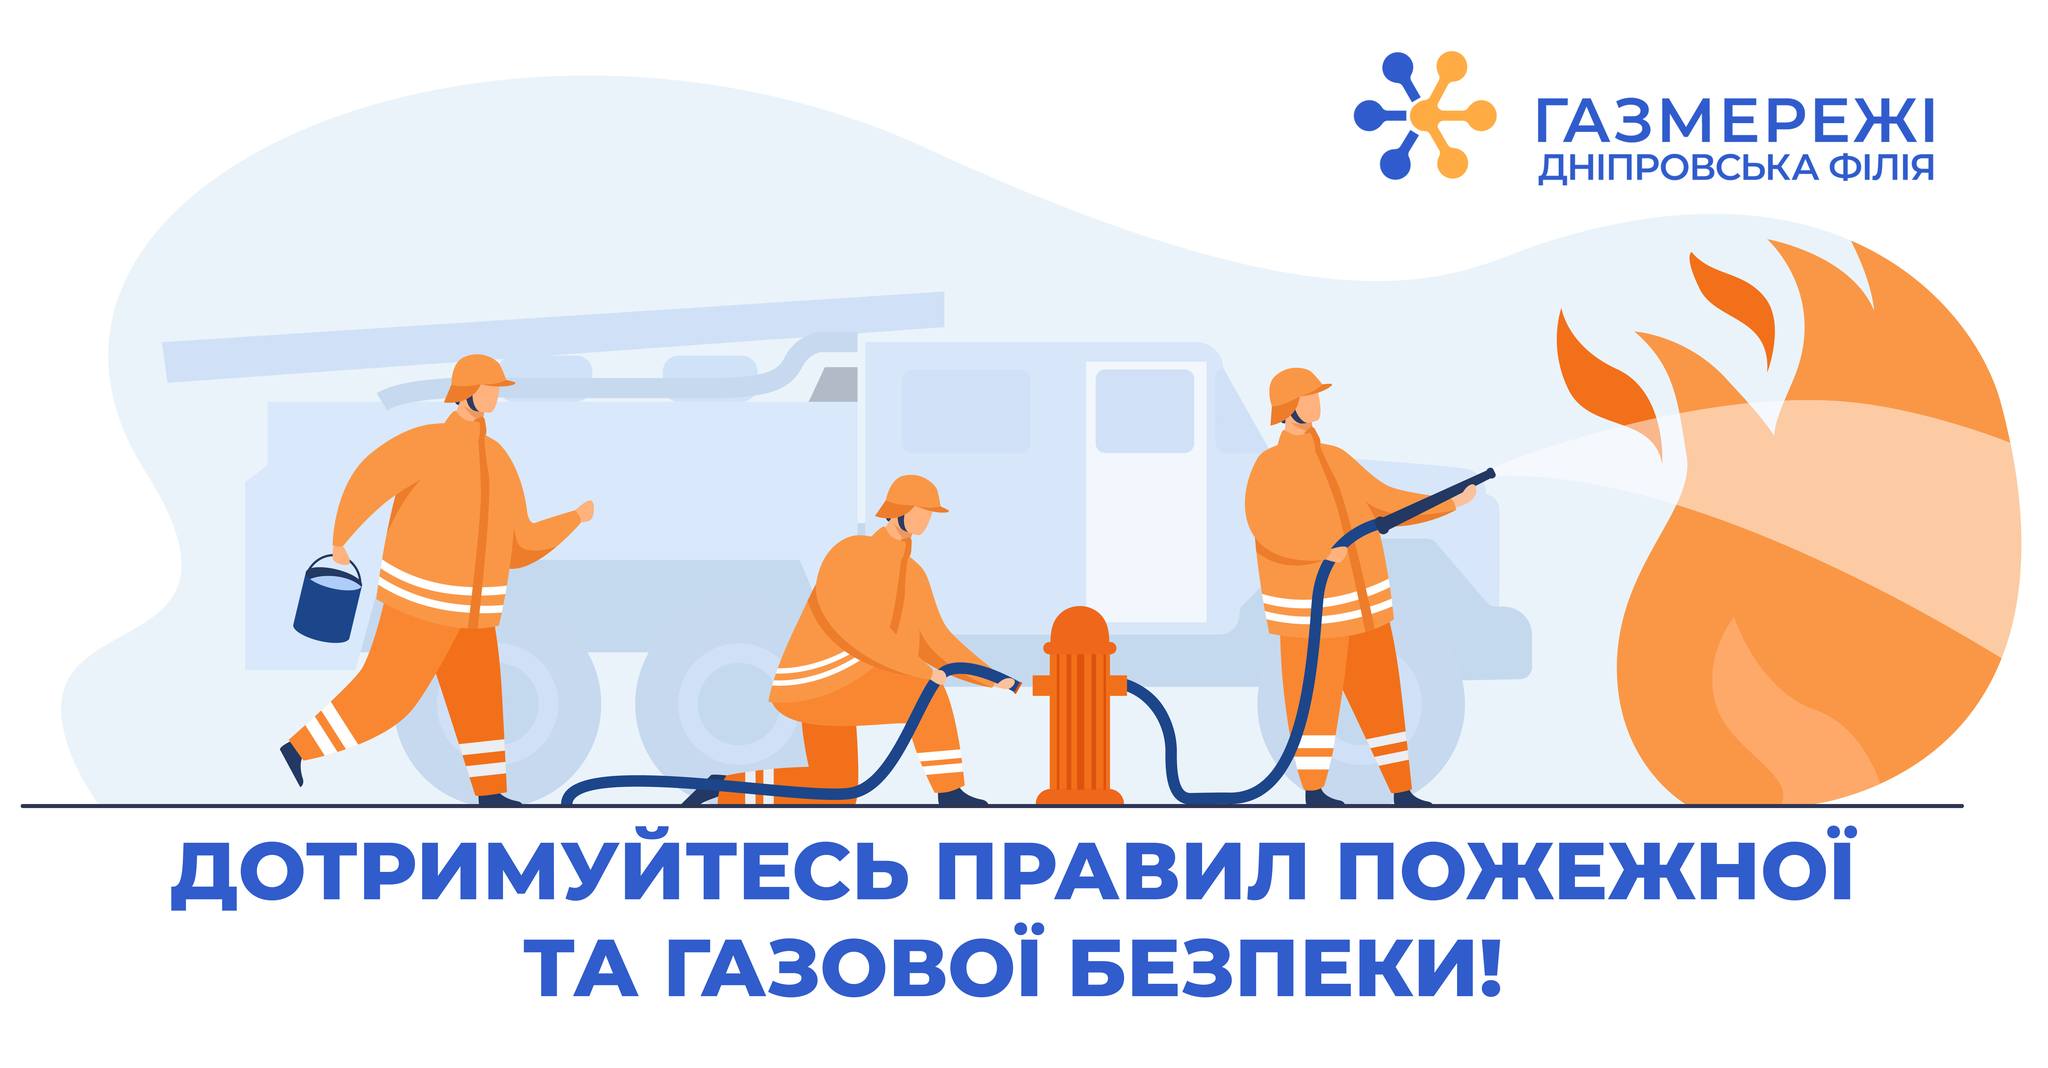 Дніпровська філія «Газмережі»: дотримуйтесь правил пожежної та газової безпеки!